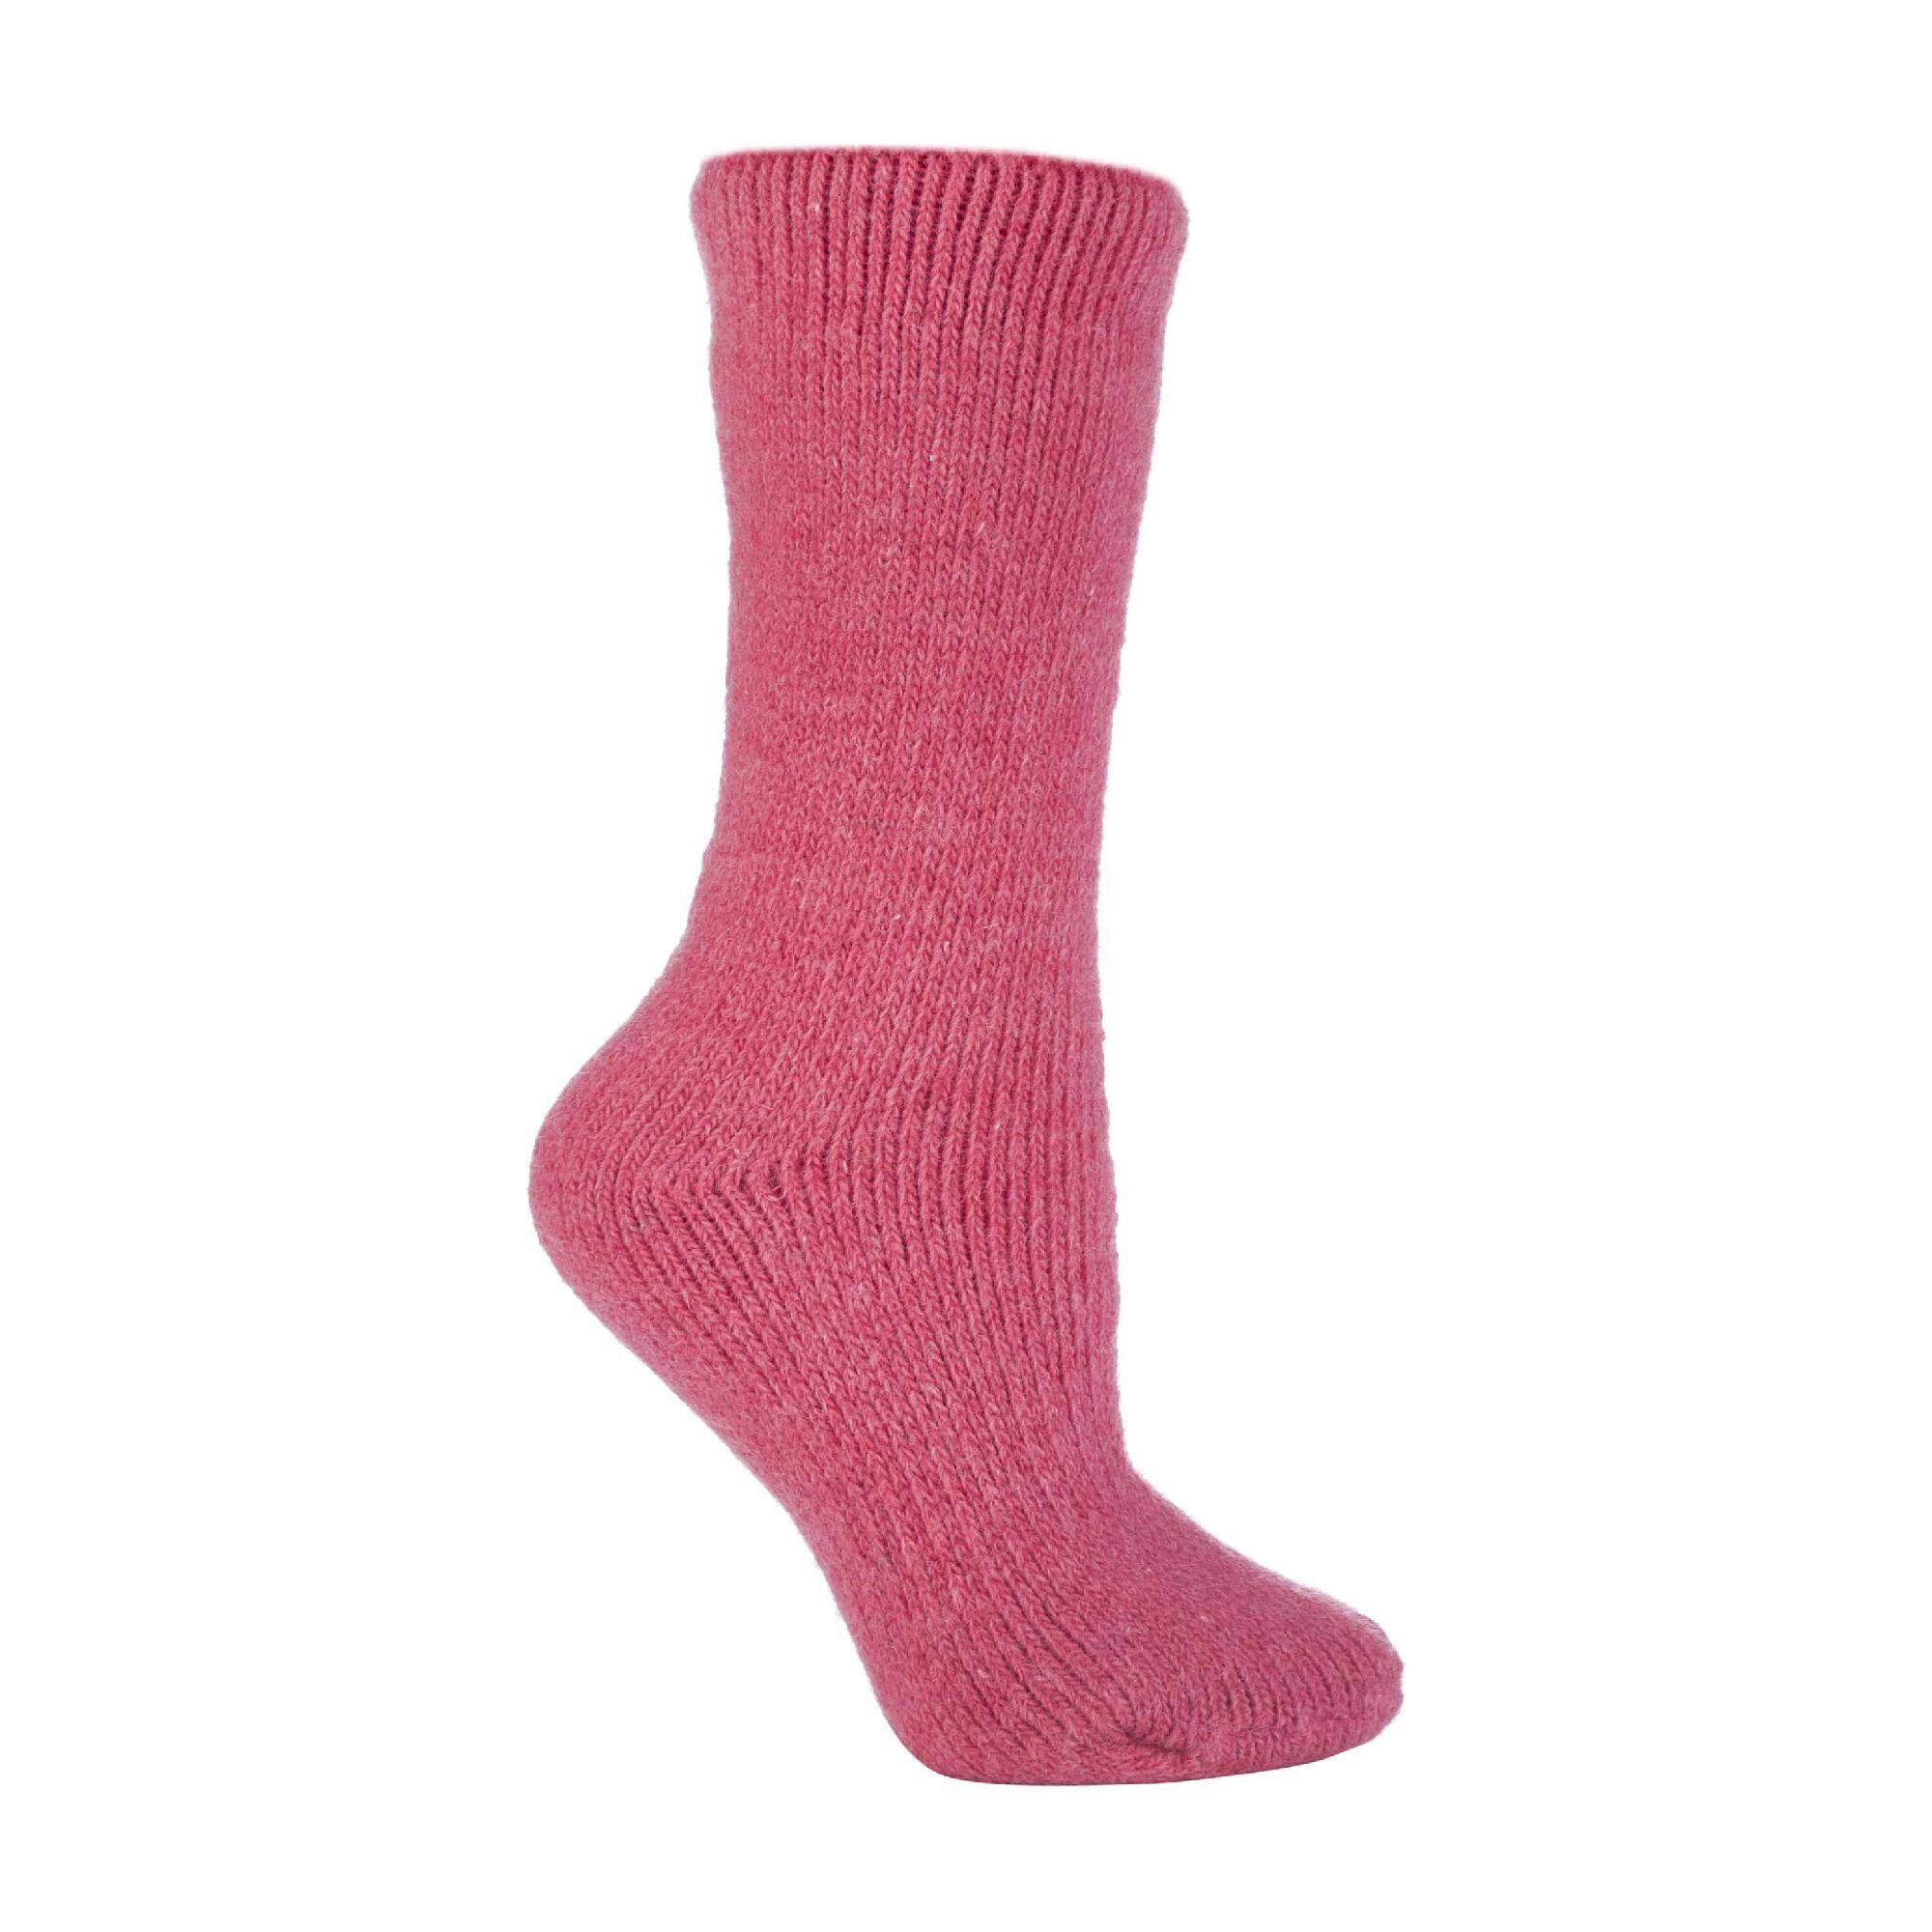 HEAT HOLDERS Ladies Winter Warm 2.7 TOG Wool Rich Thermal Socks